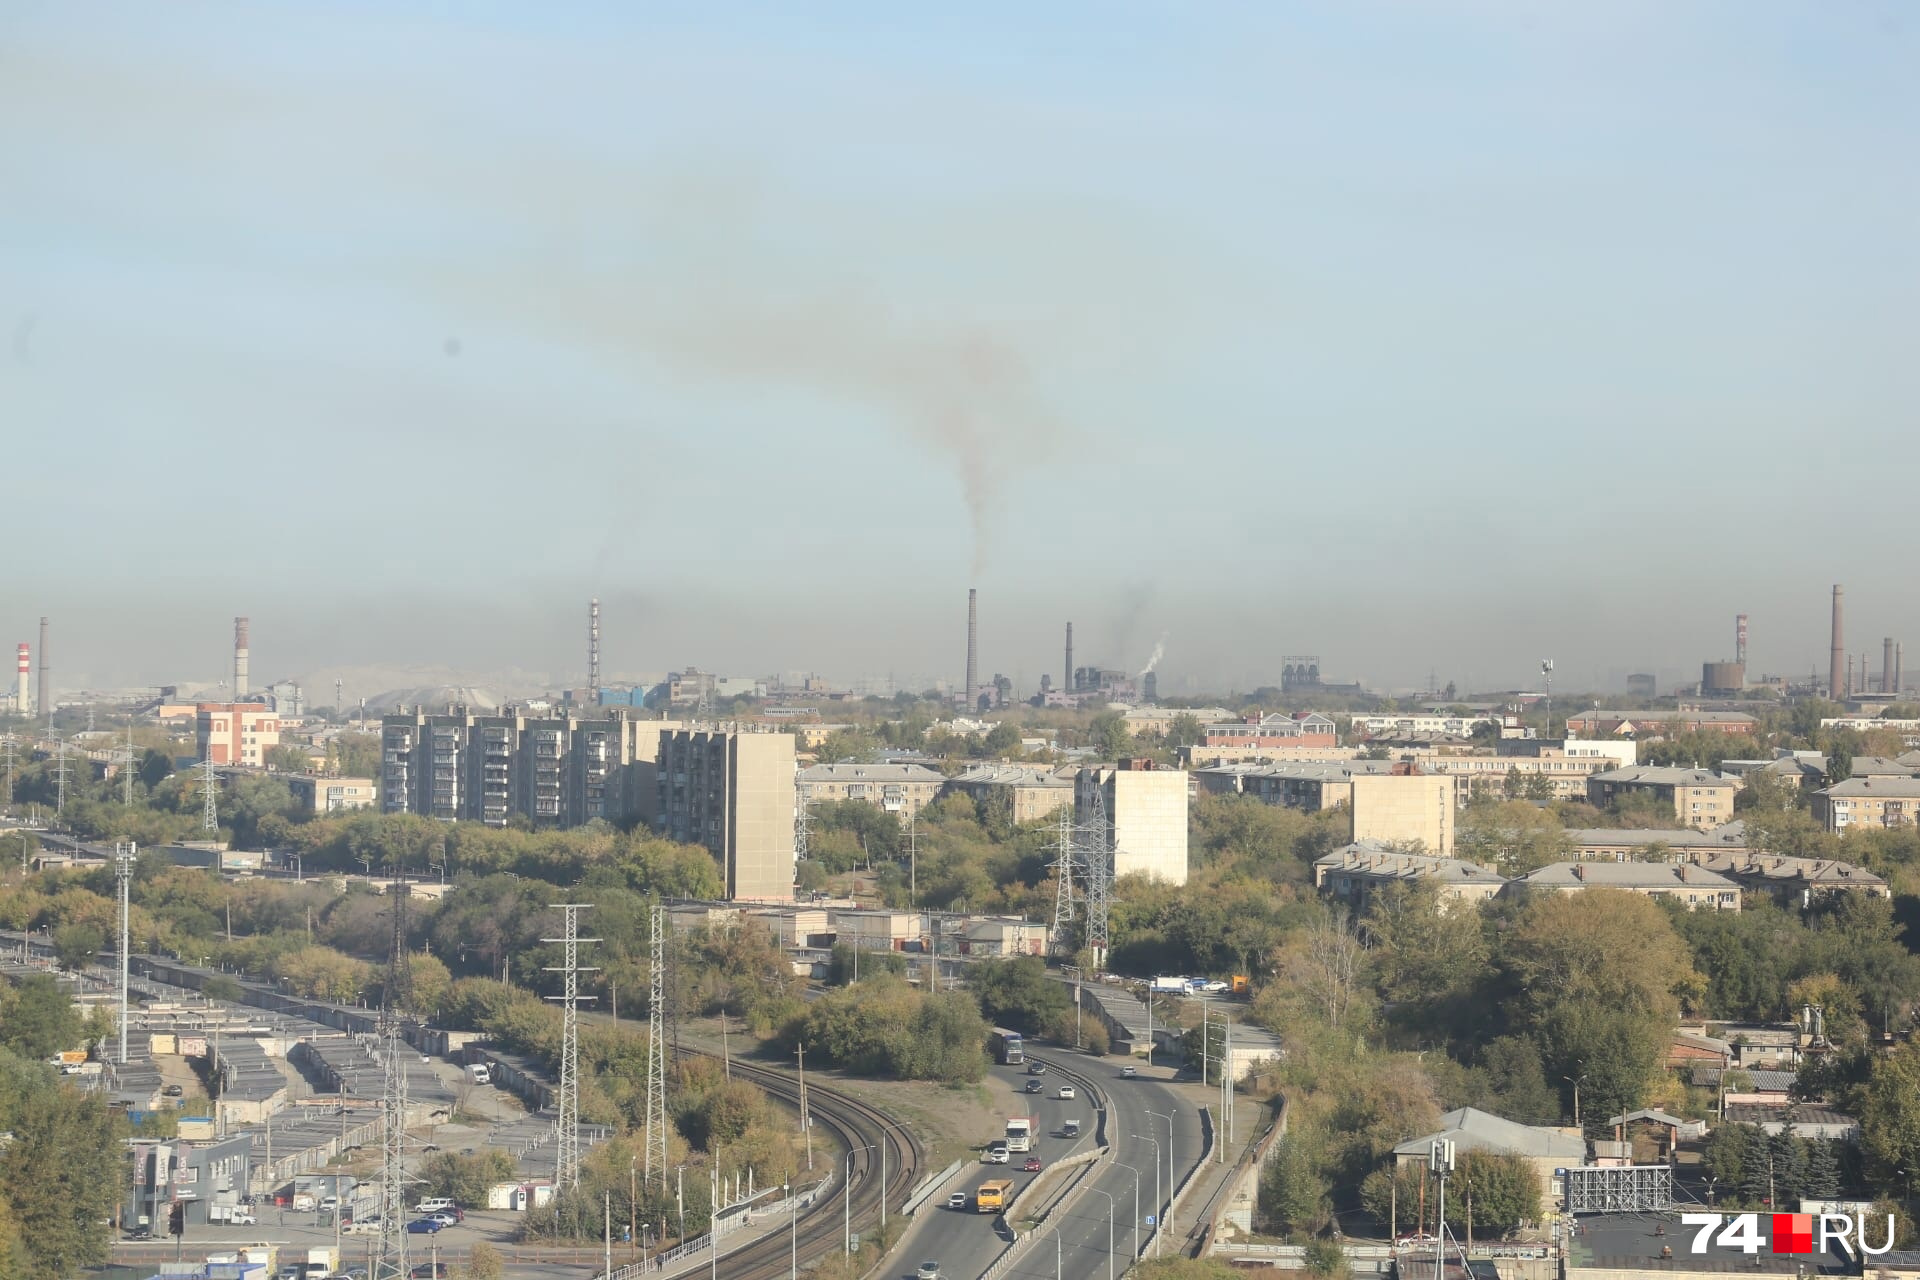 Предприятиям поручили снизить выбросы, но небо над городом всё равно затянуто грязно-серой пеленой